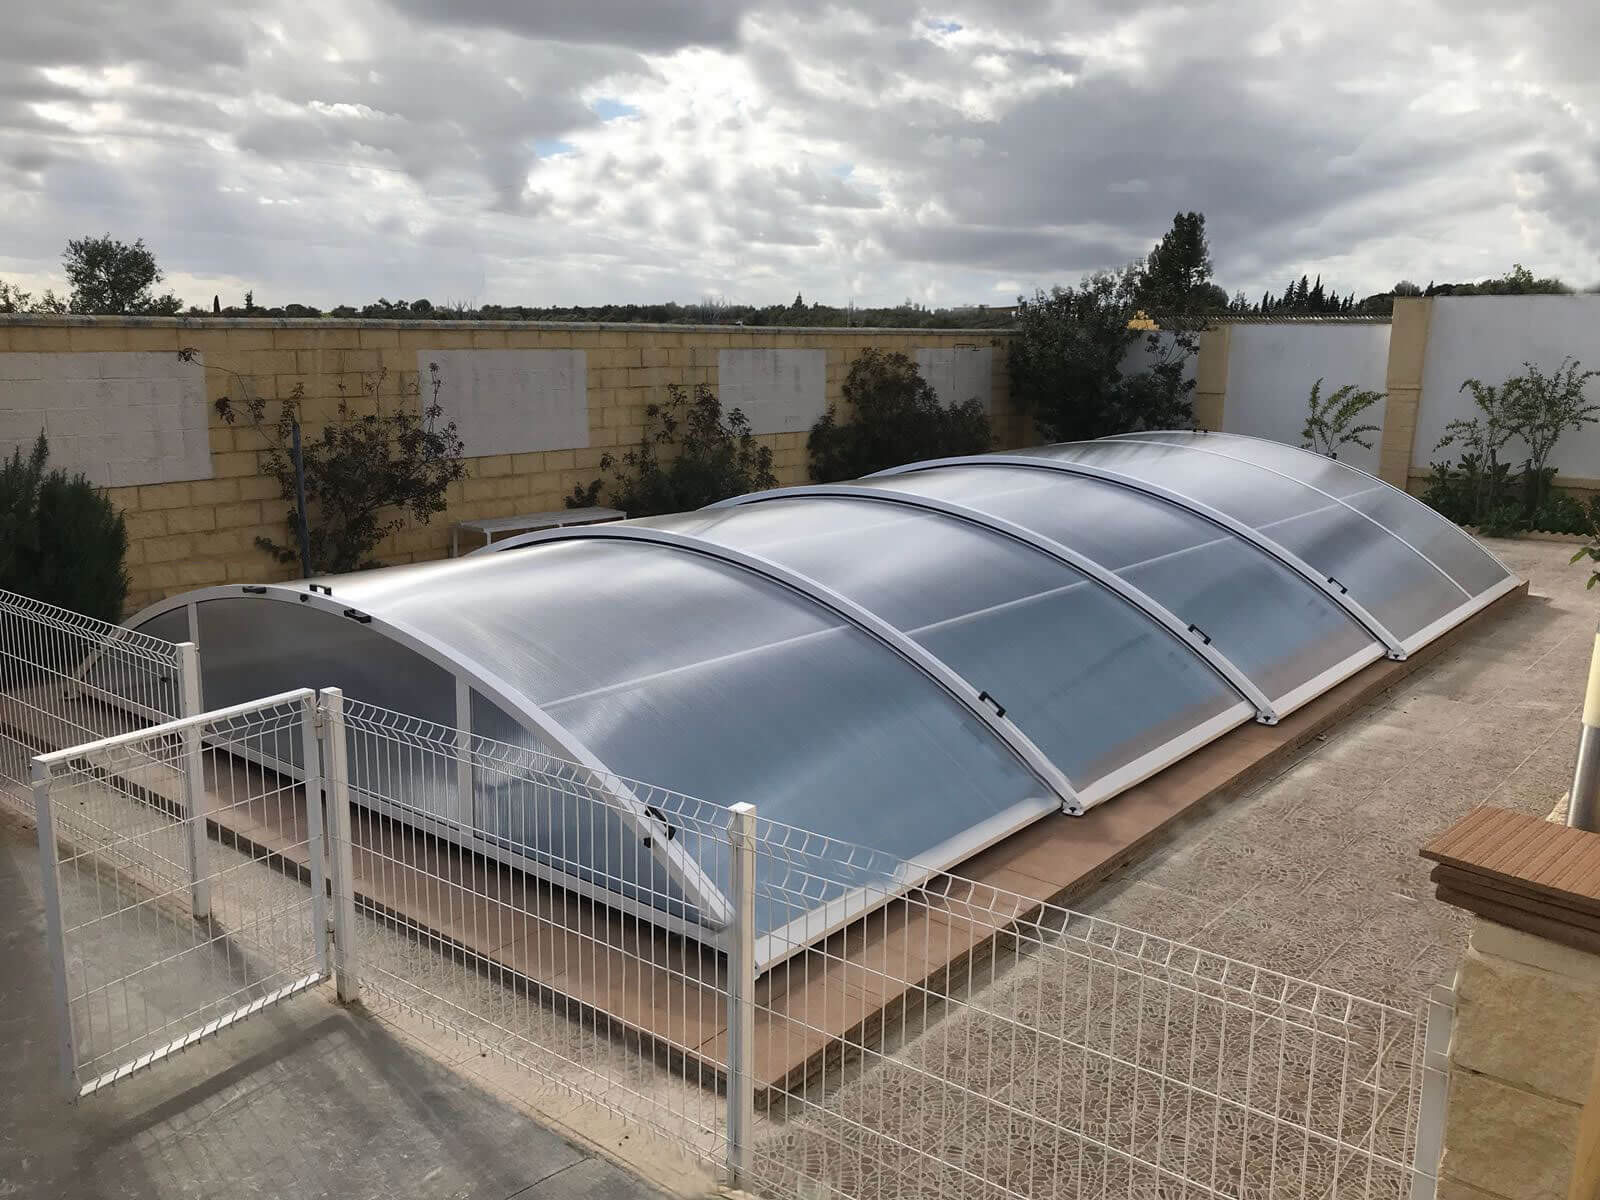 Cubierta Teide: Cubierta baja y telescópica para piscina en Sevilla exterior